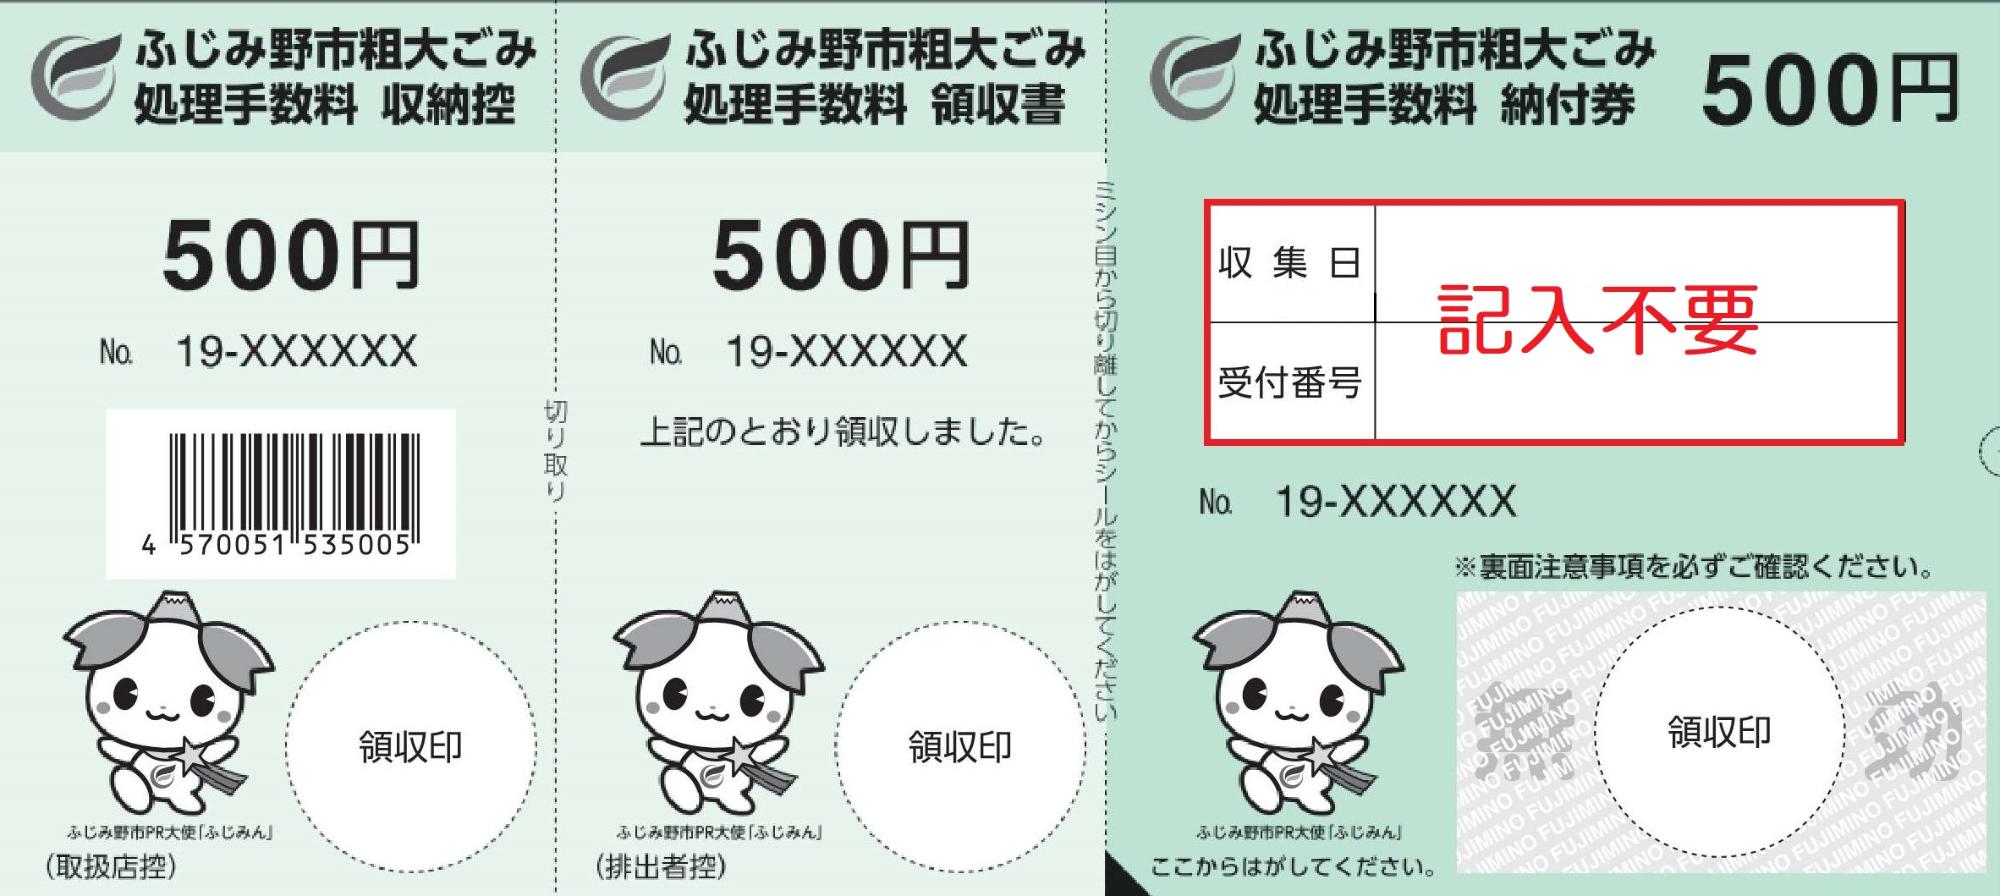 収集日と受付番号の欄に記入不要と書かれた５００円券の図